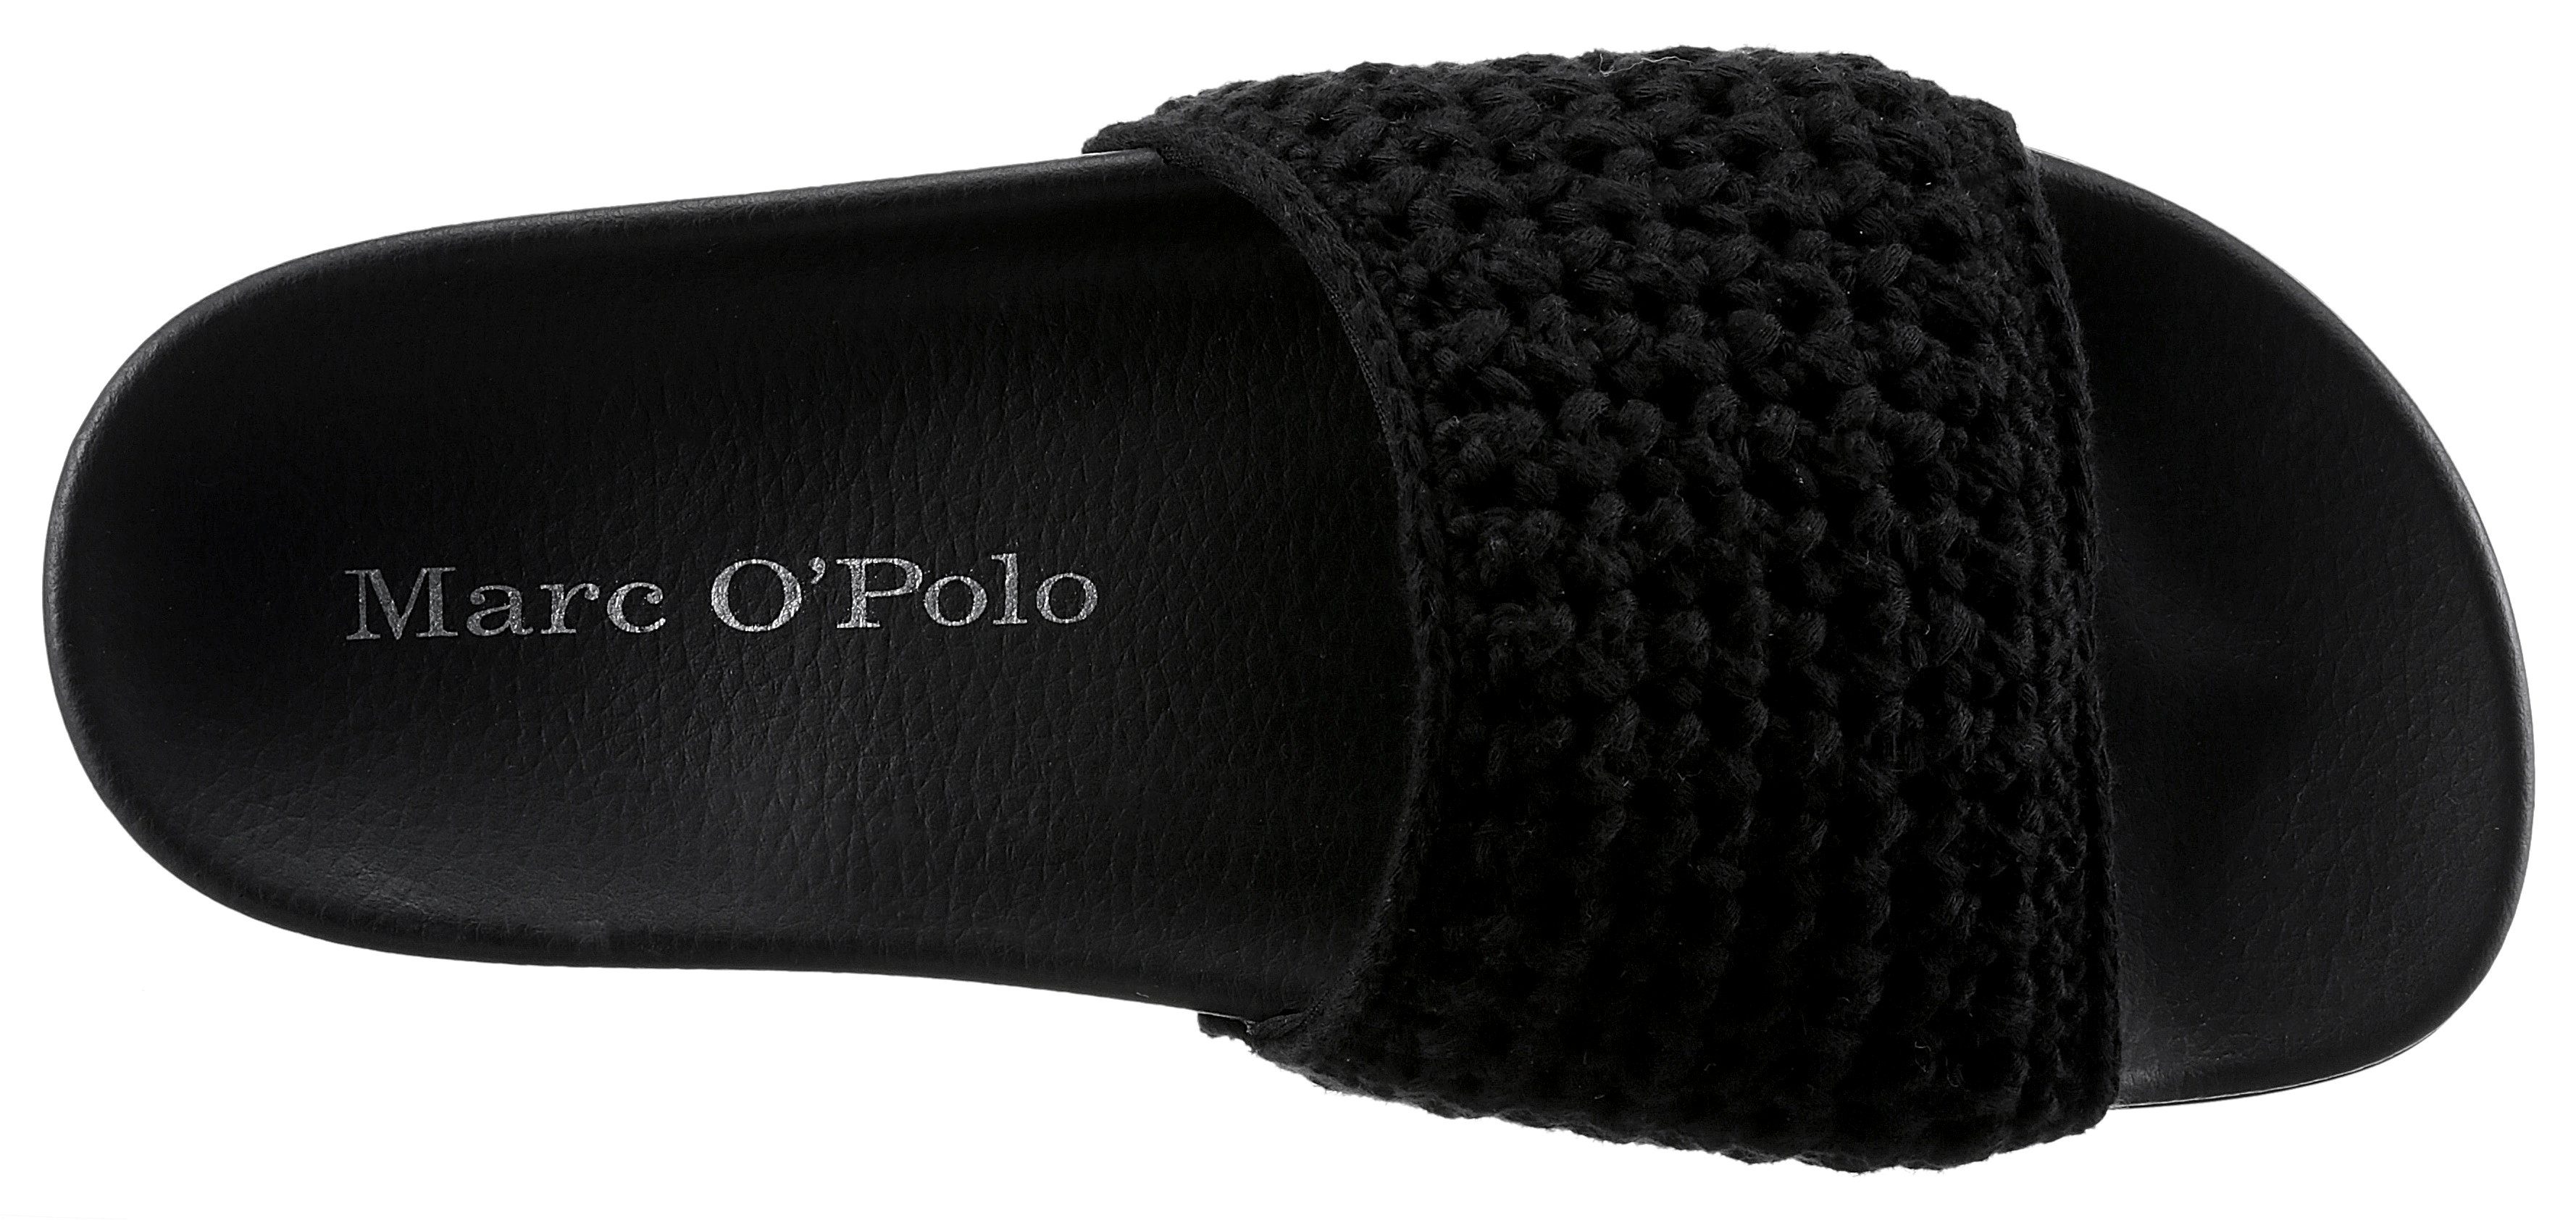 Marc O'Polo Pantolette schwarz mit Bandage breiter